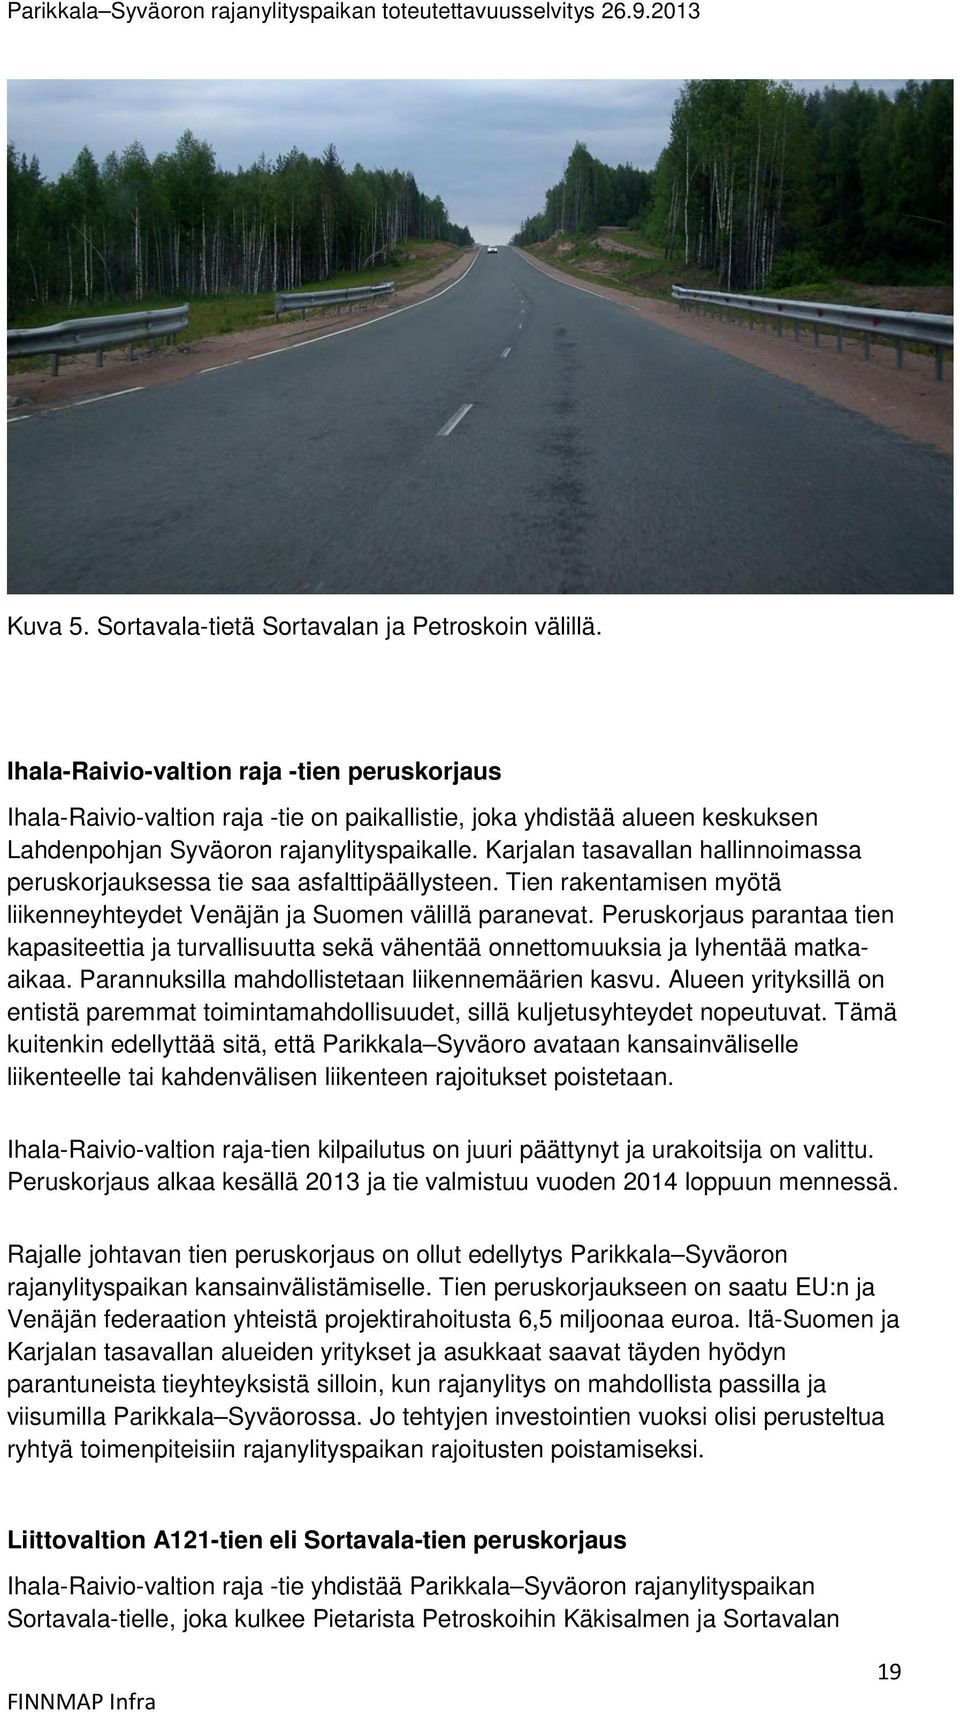 Karjalan tasavallan hallinnoimassa peruskorjauksessa tie saa asfalttipäällysteen. Tien rakentamisen myötä liikenneyhteydet Venäjän ja Suomen välillä paranevat.